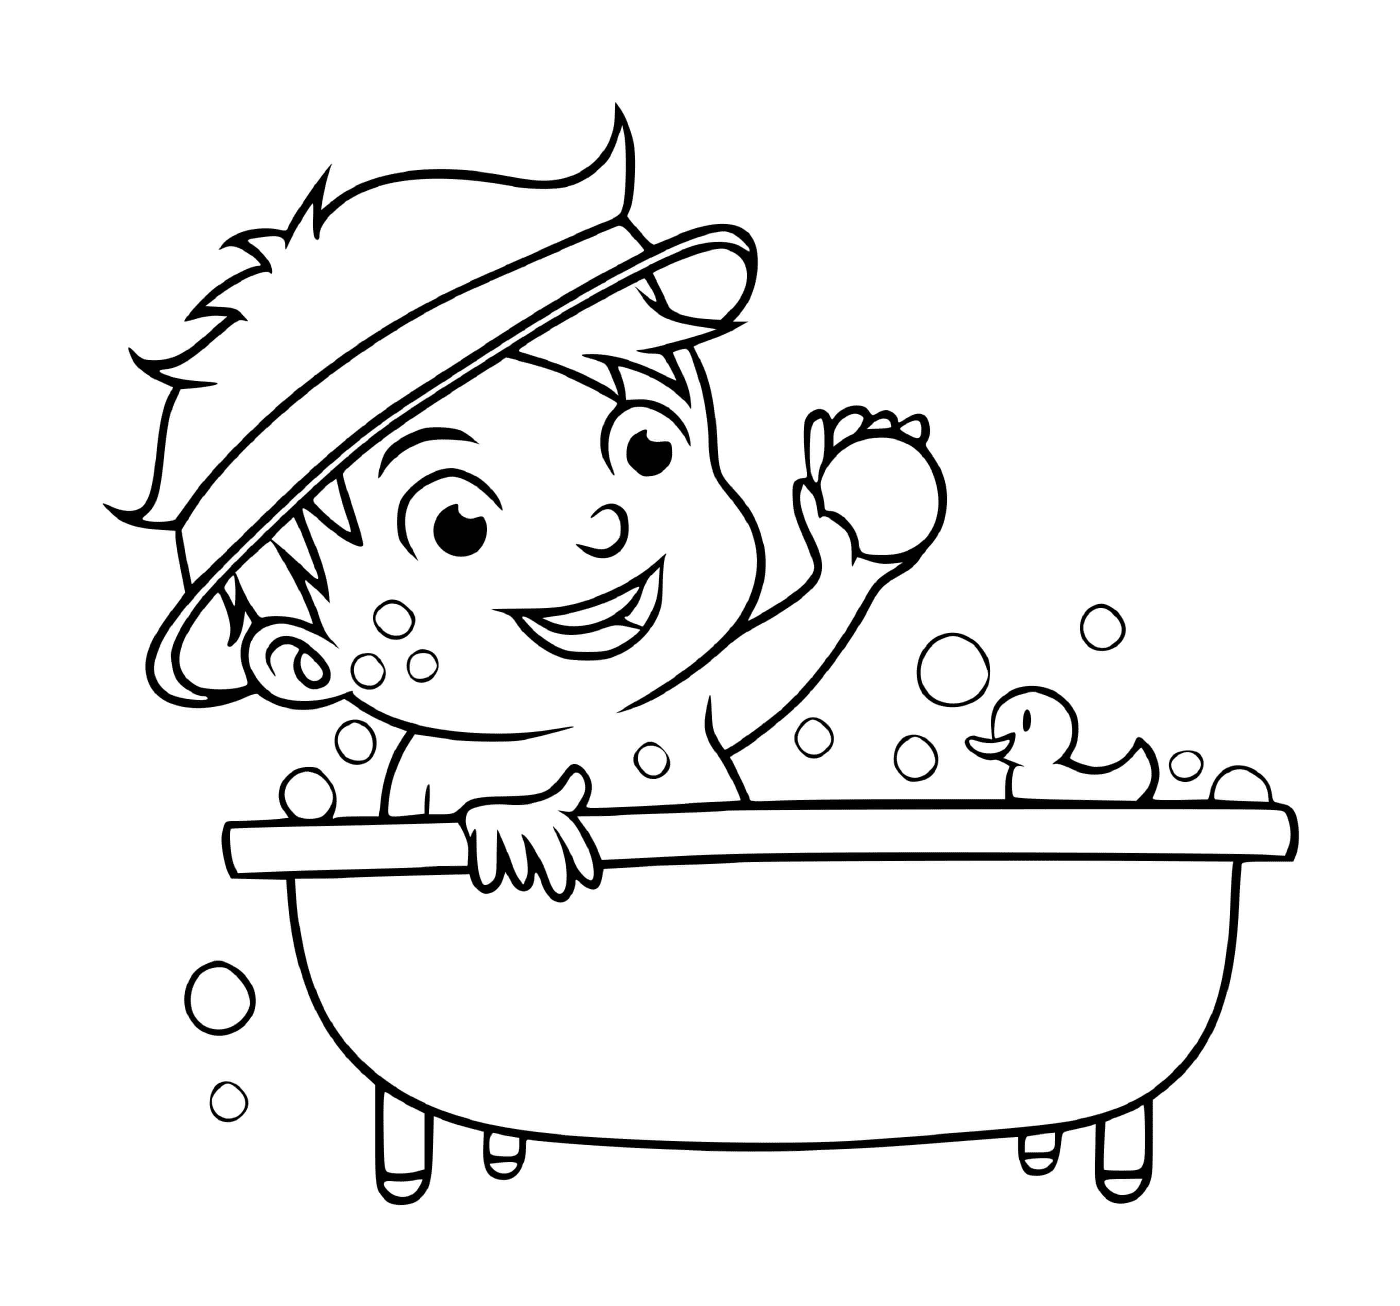  Um menino toma banho para ficar limpo 